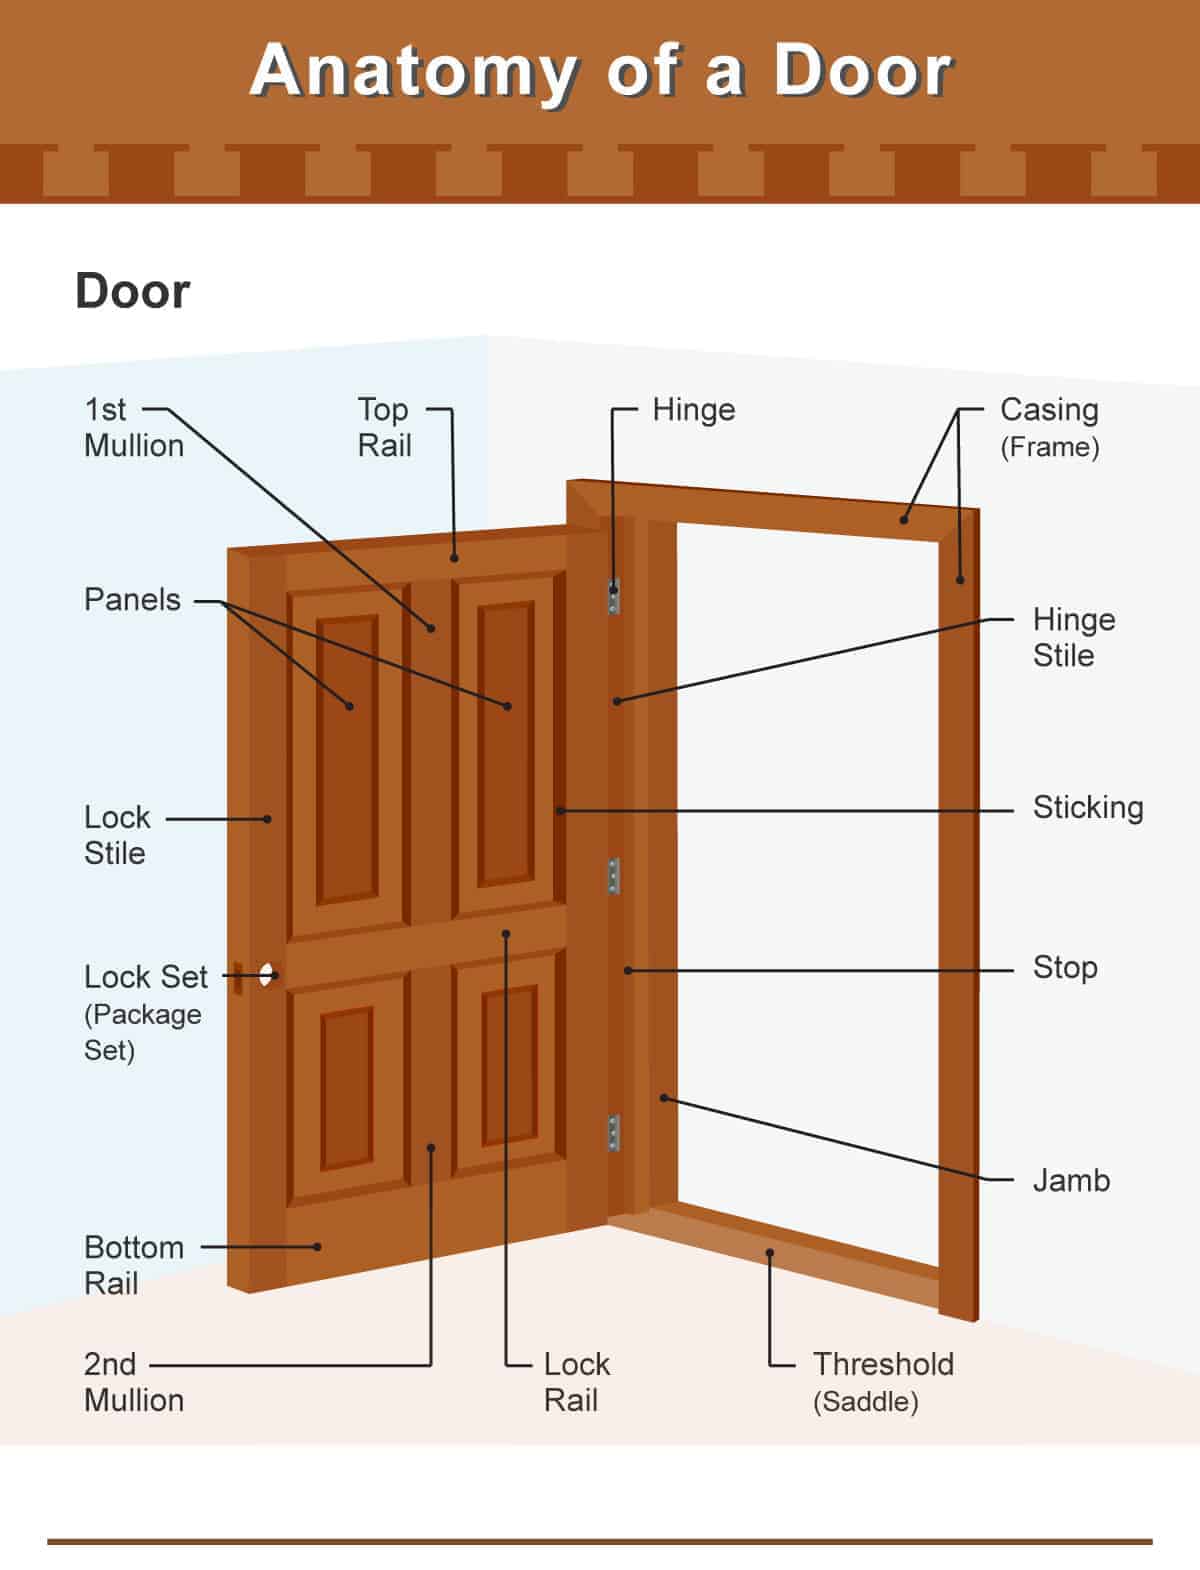 Different parts of a door